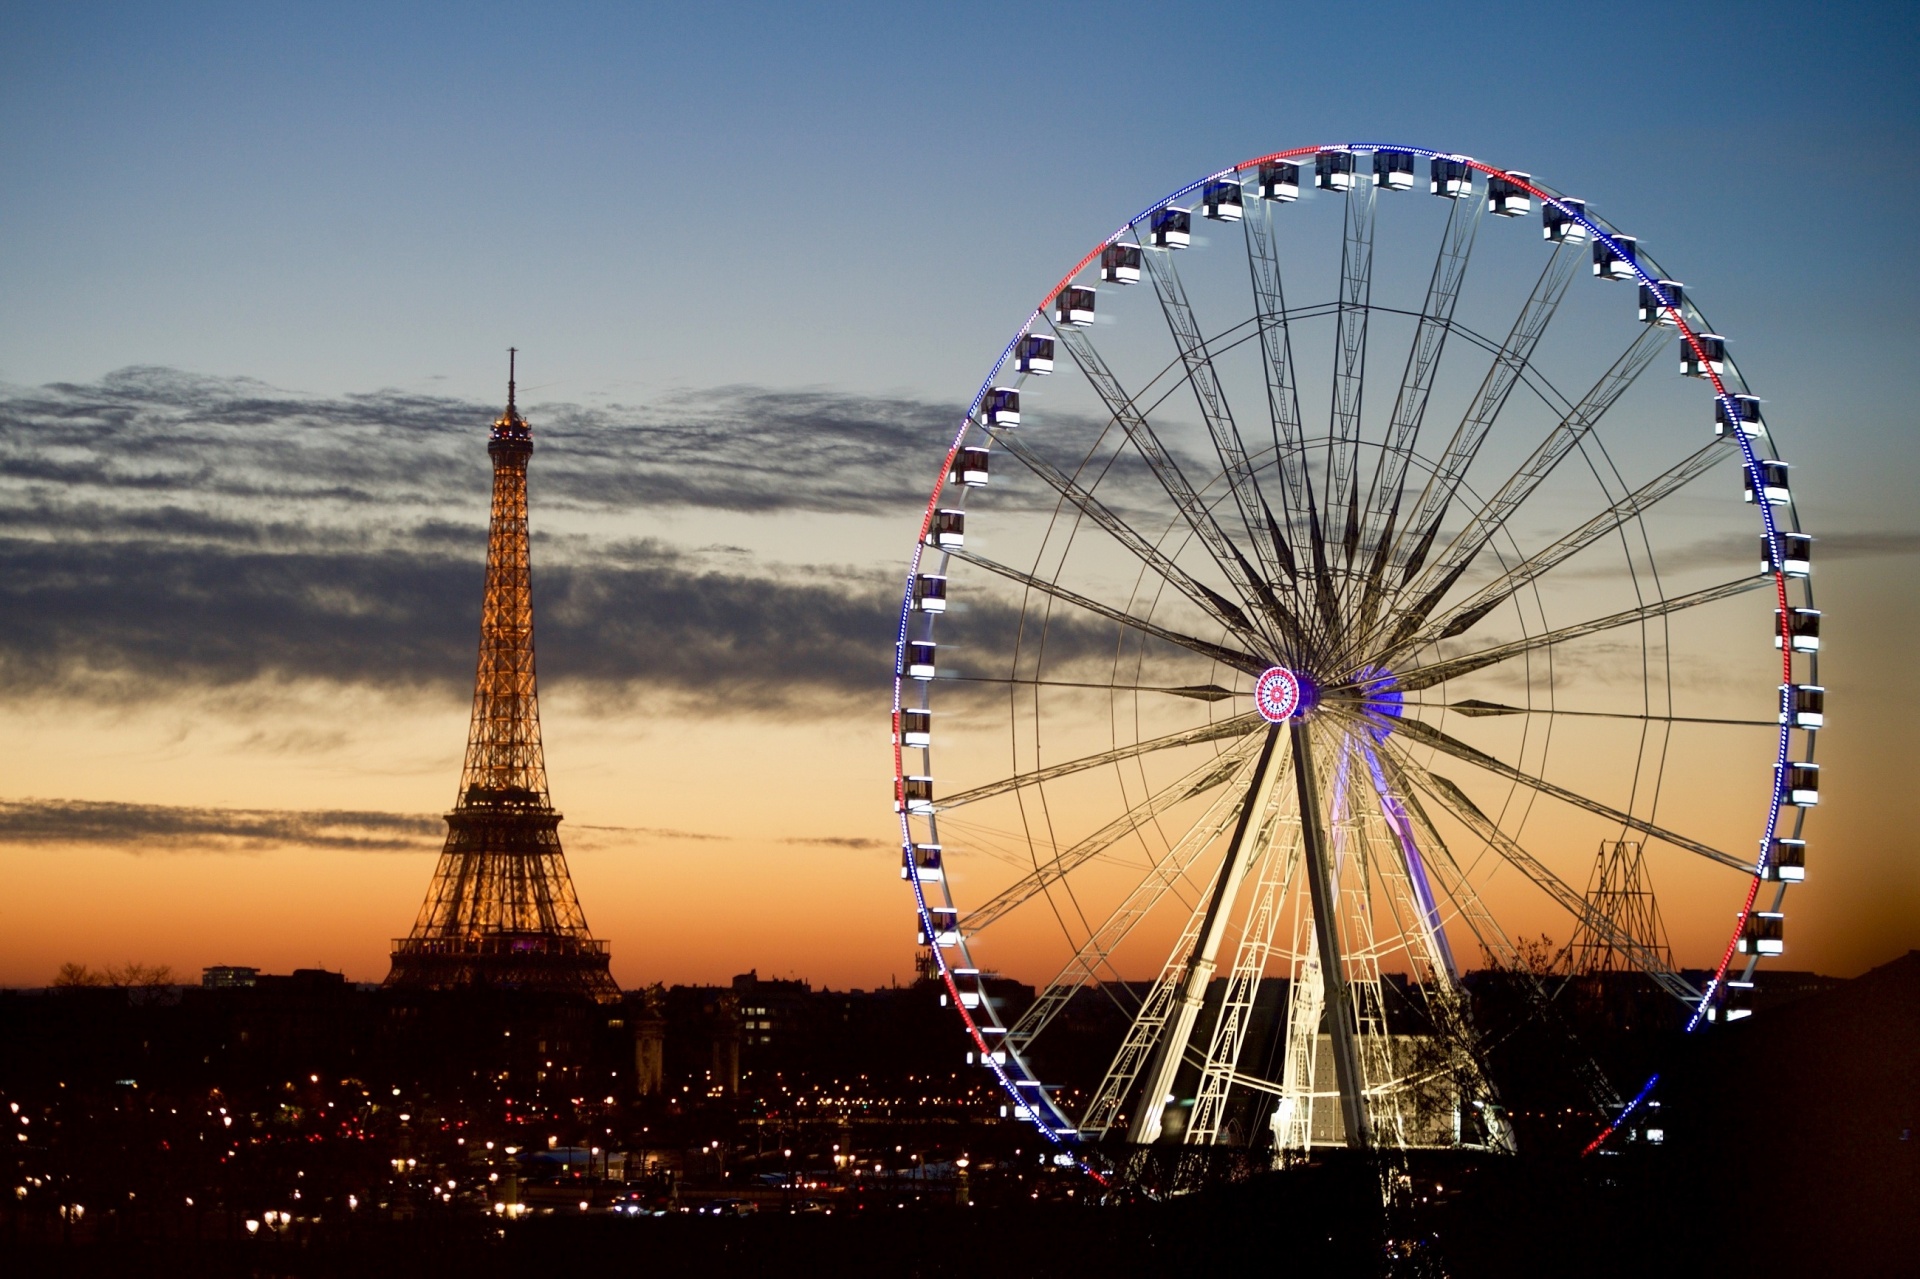 Eiffel Tower And Ferris Wheel